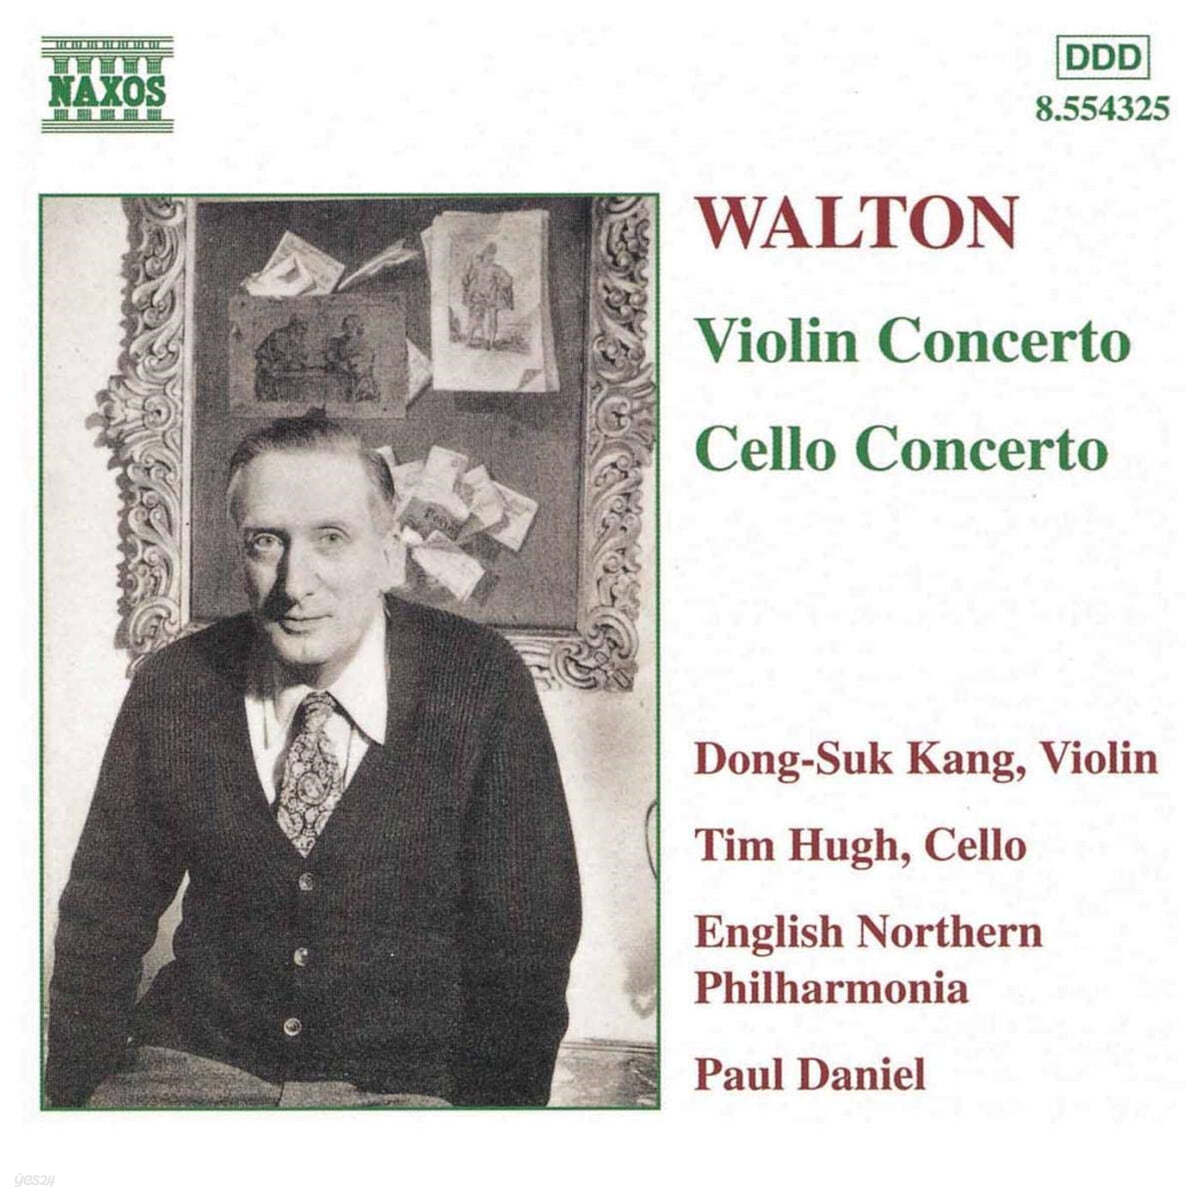 강동석 - 윌리암 월톤: 바이올린 협주곡, 첼로 협주곡 (William Walton: Violin Concerto, Cello Concerto) 